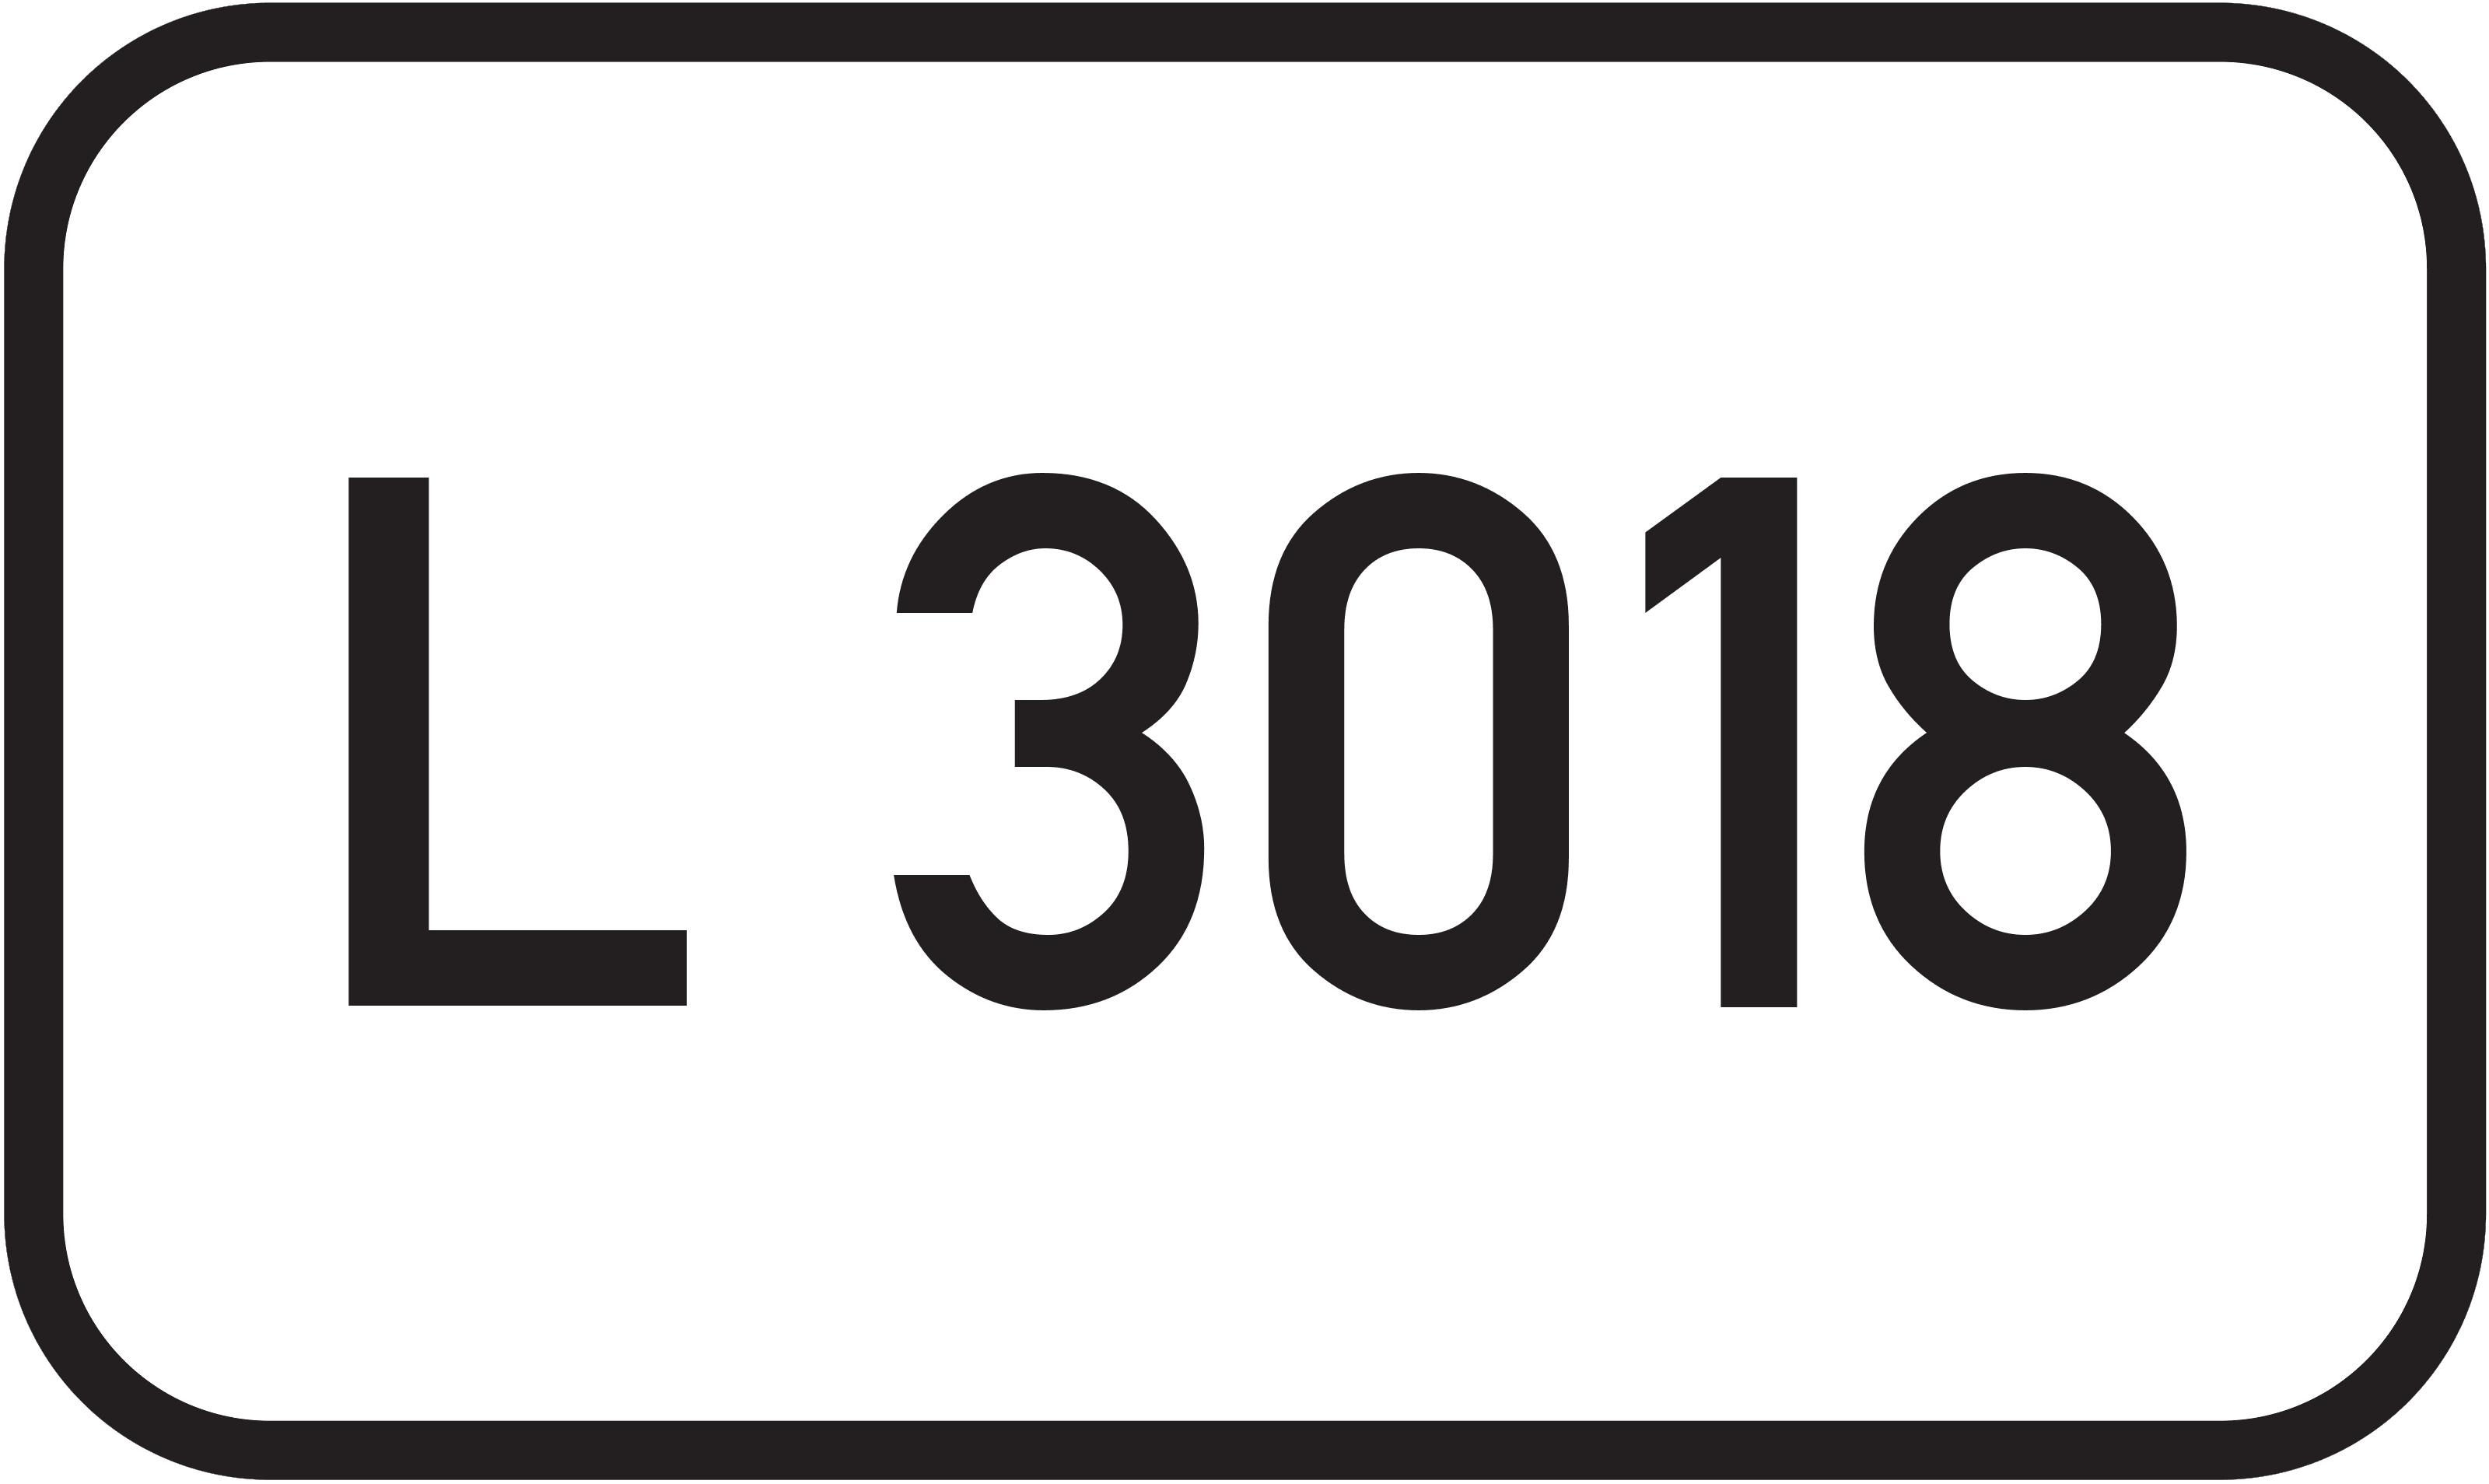 Landesstraße L 3018